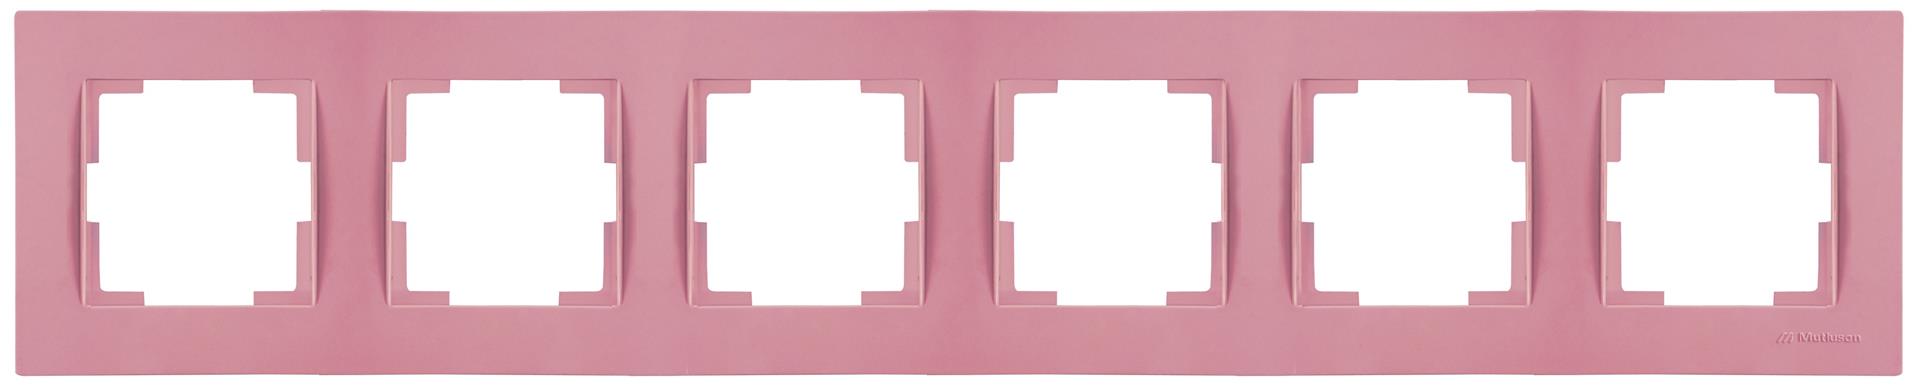 6 fach Rahmen horizontal Pink / Rosa (RITA Pastell Farben)